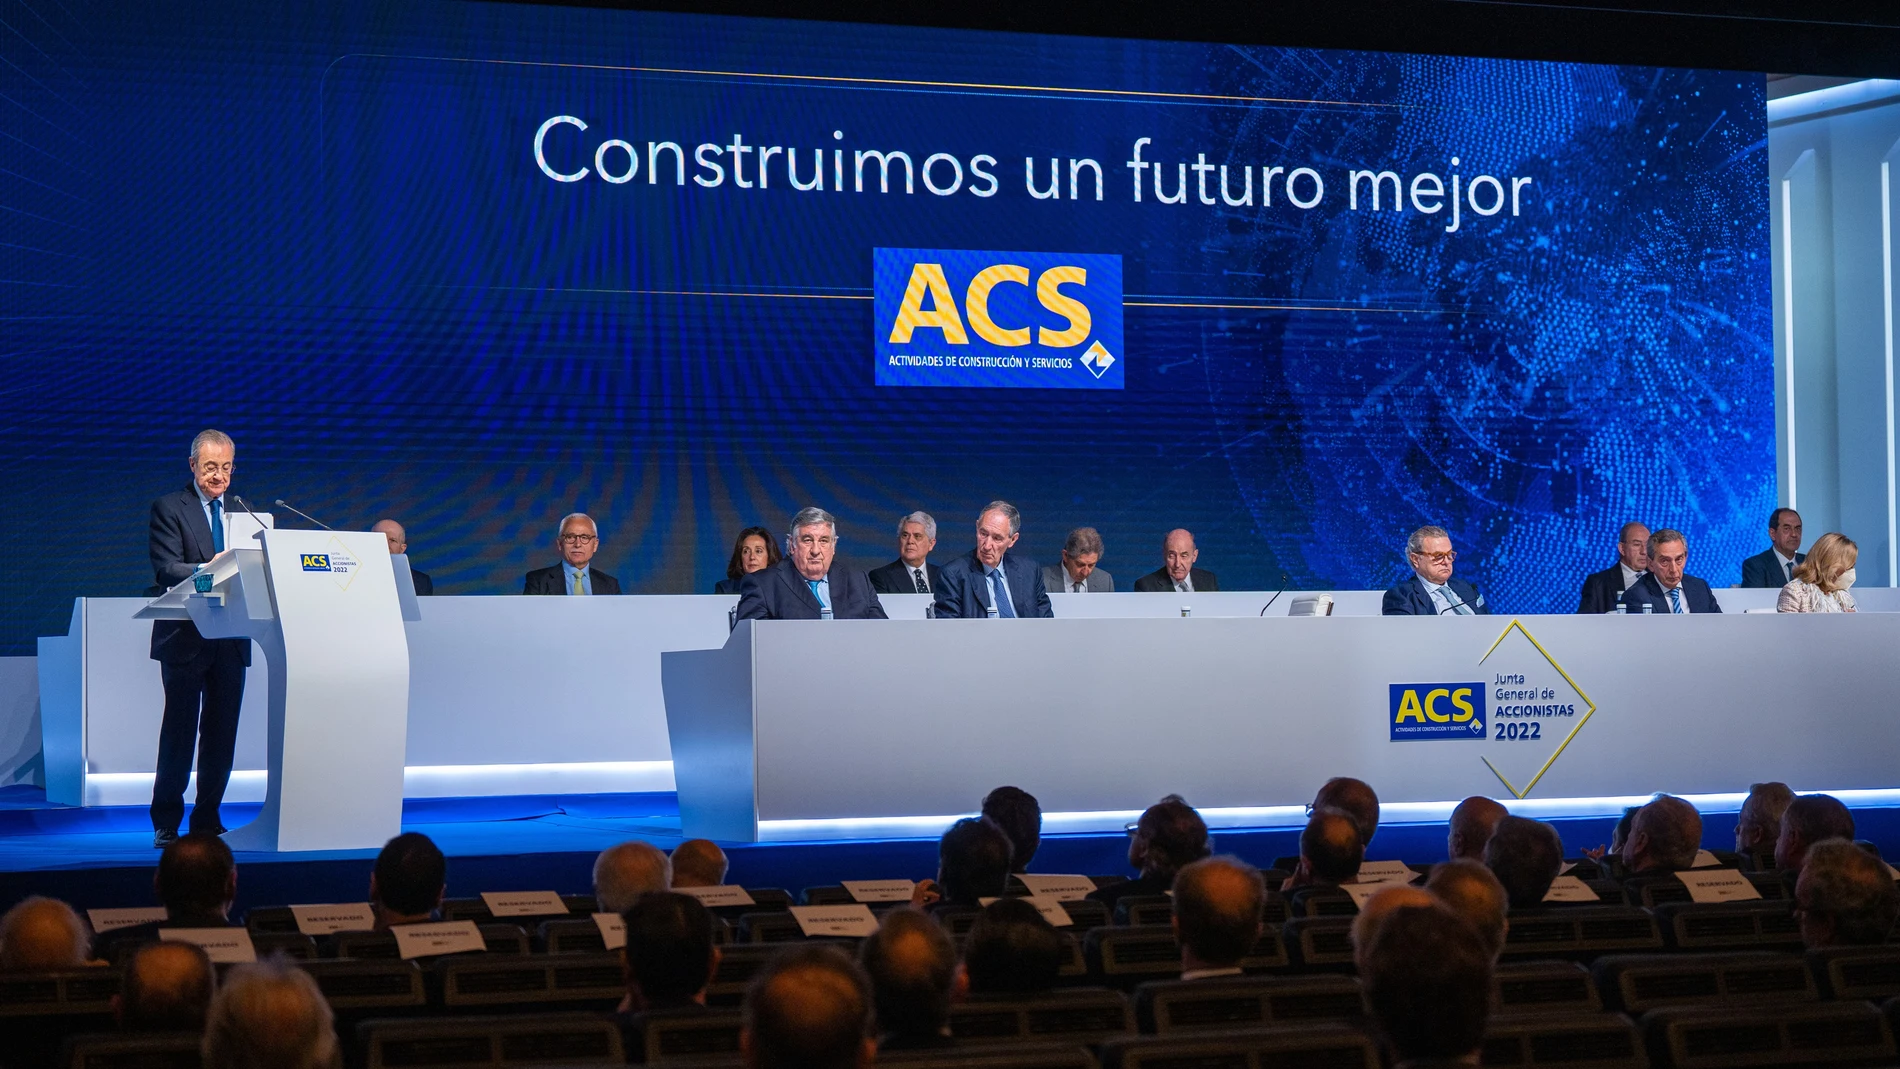 Economía/Empresas.- ACS ampliará en un máximo de 580 millones de euros su capital para el pago del dividendo